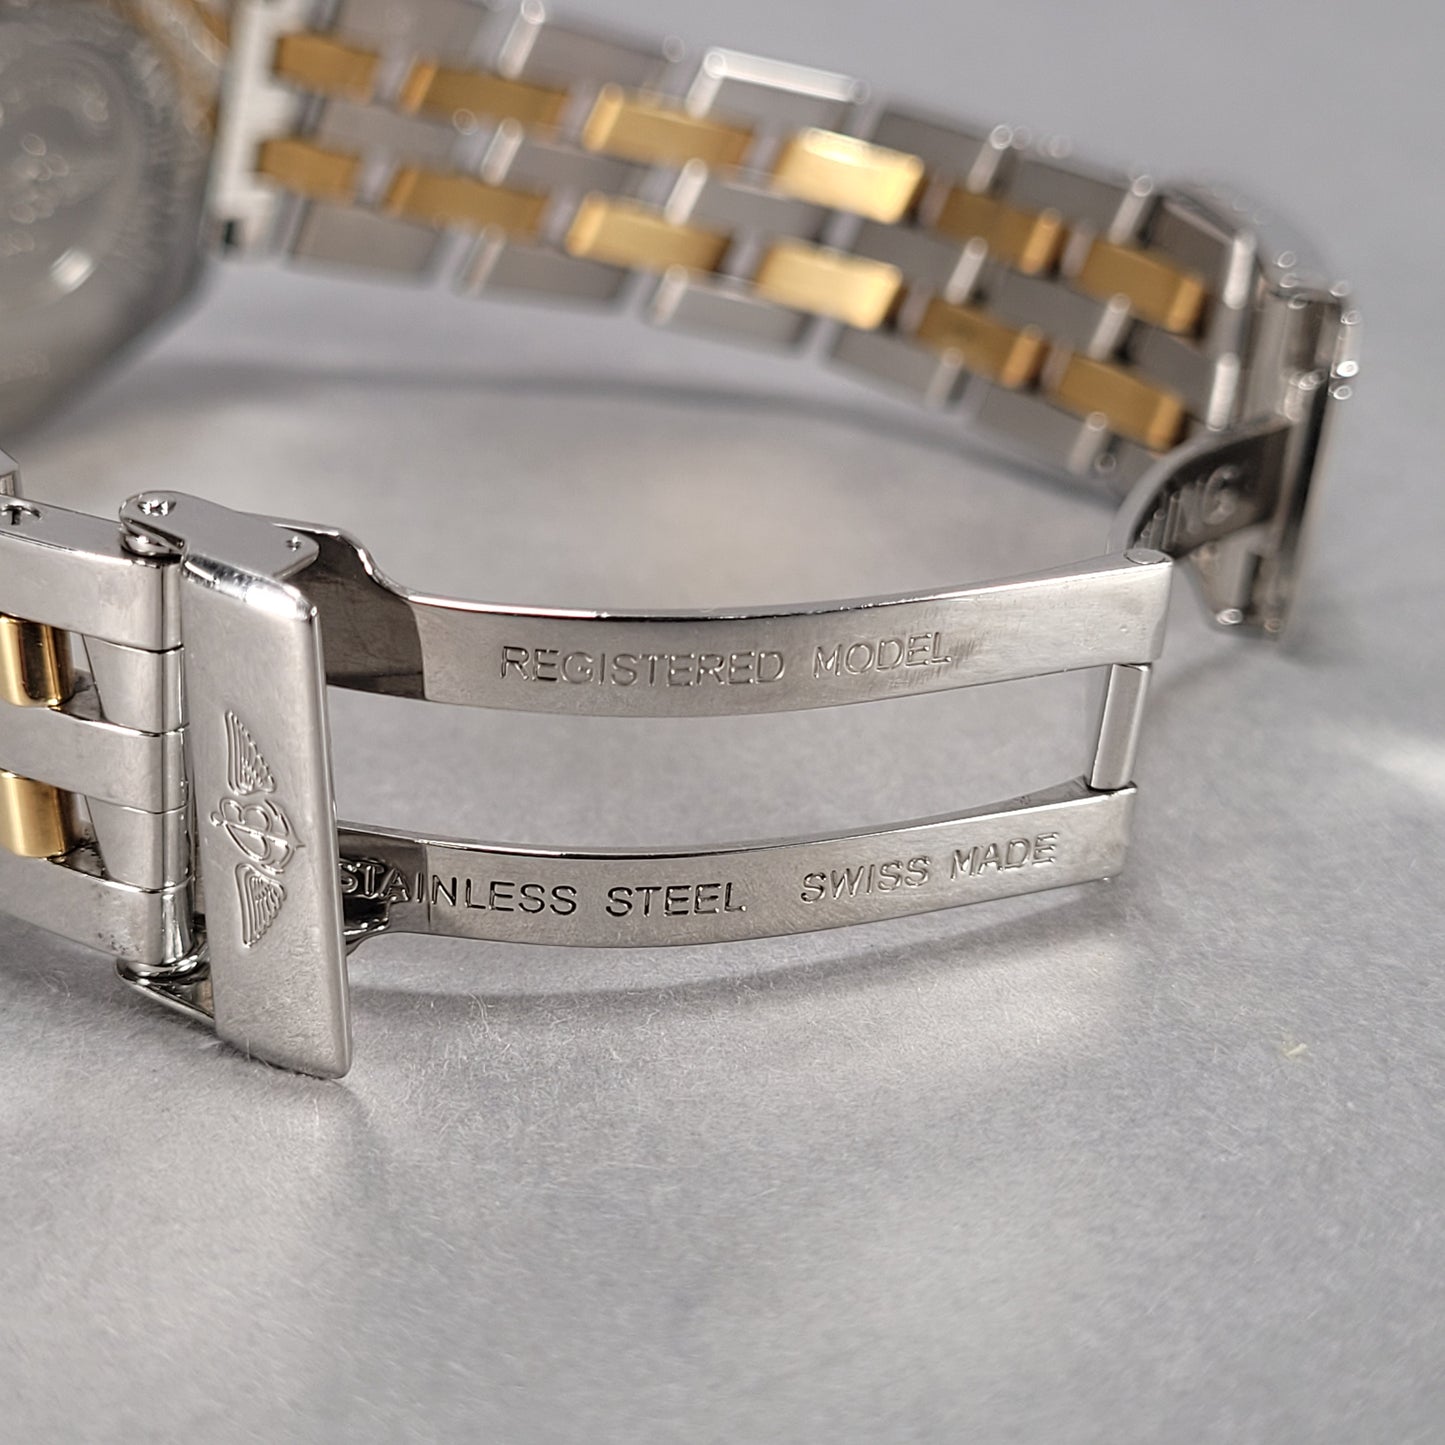 Breitling Crosswing 18k Gold/Stainless Steel 813355 Men's Watch